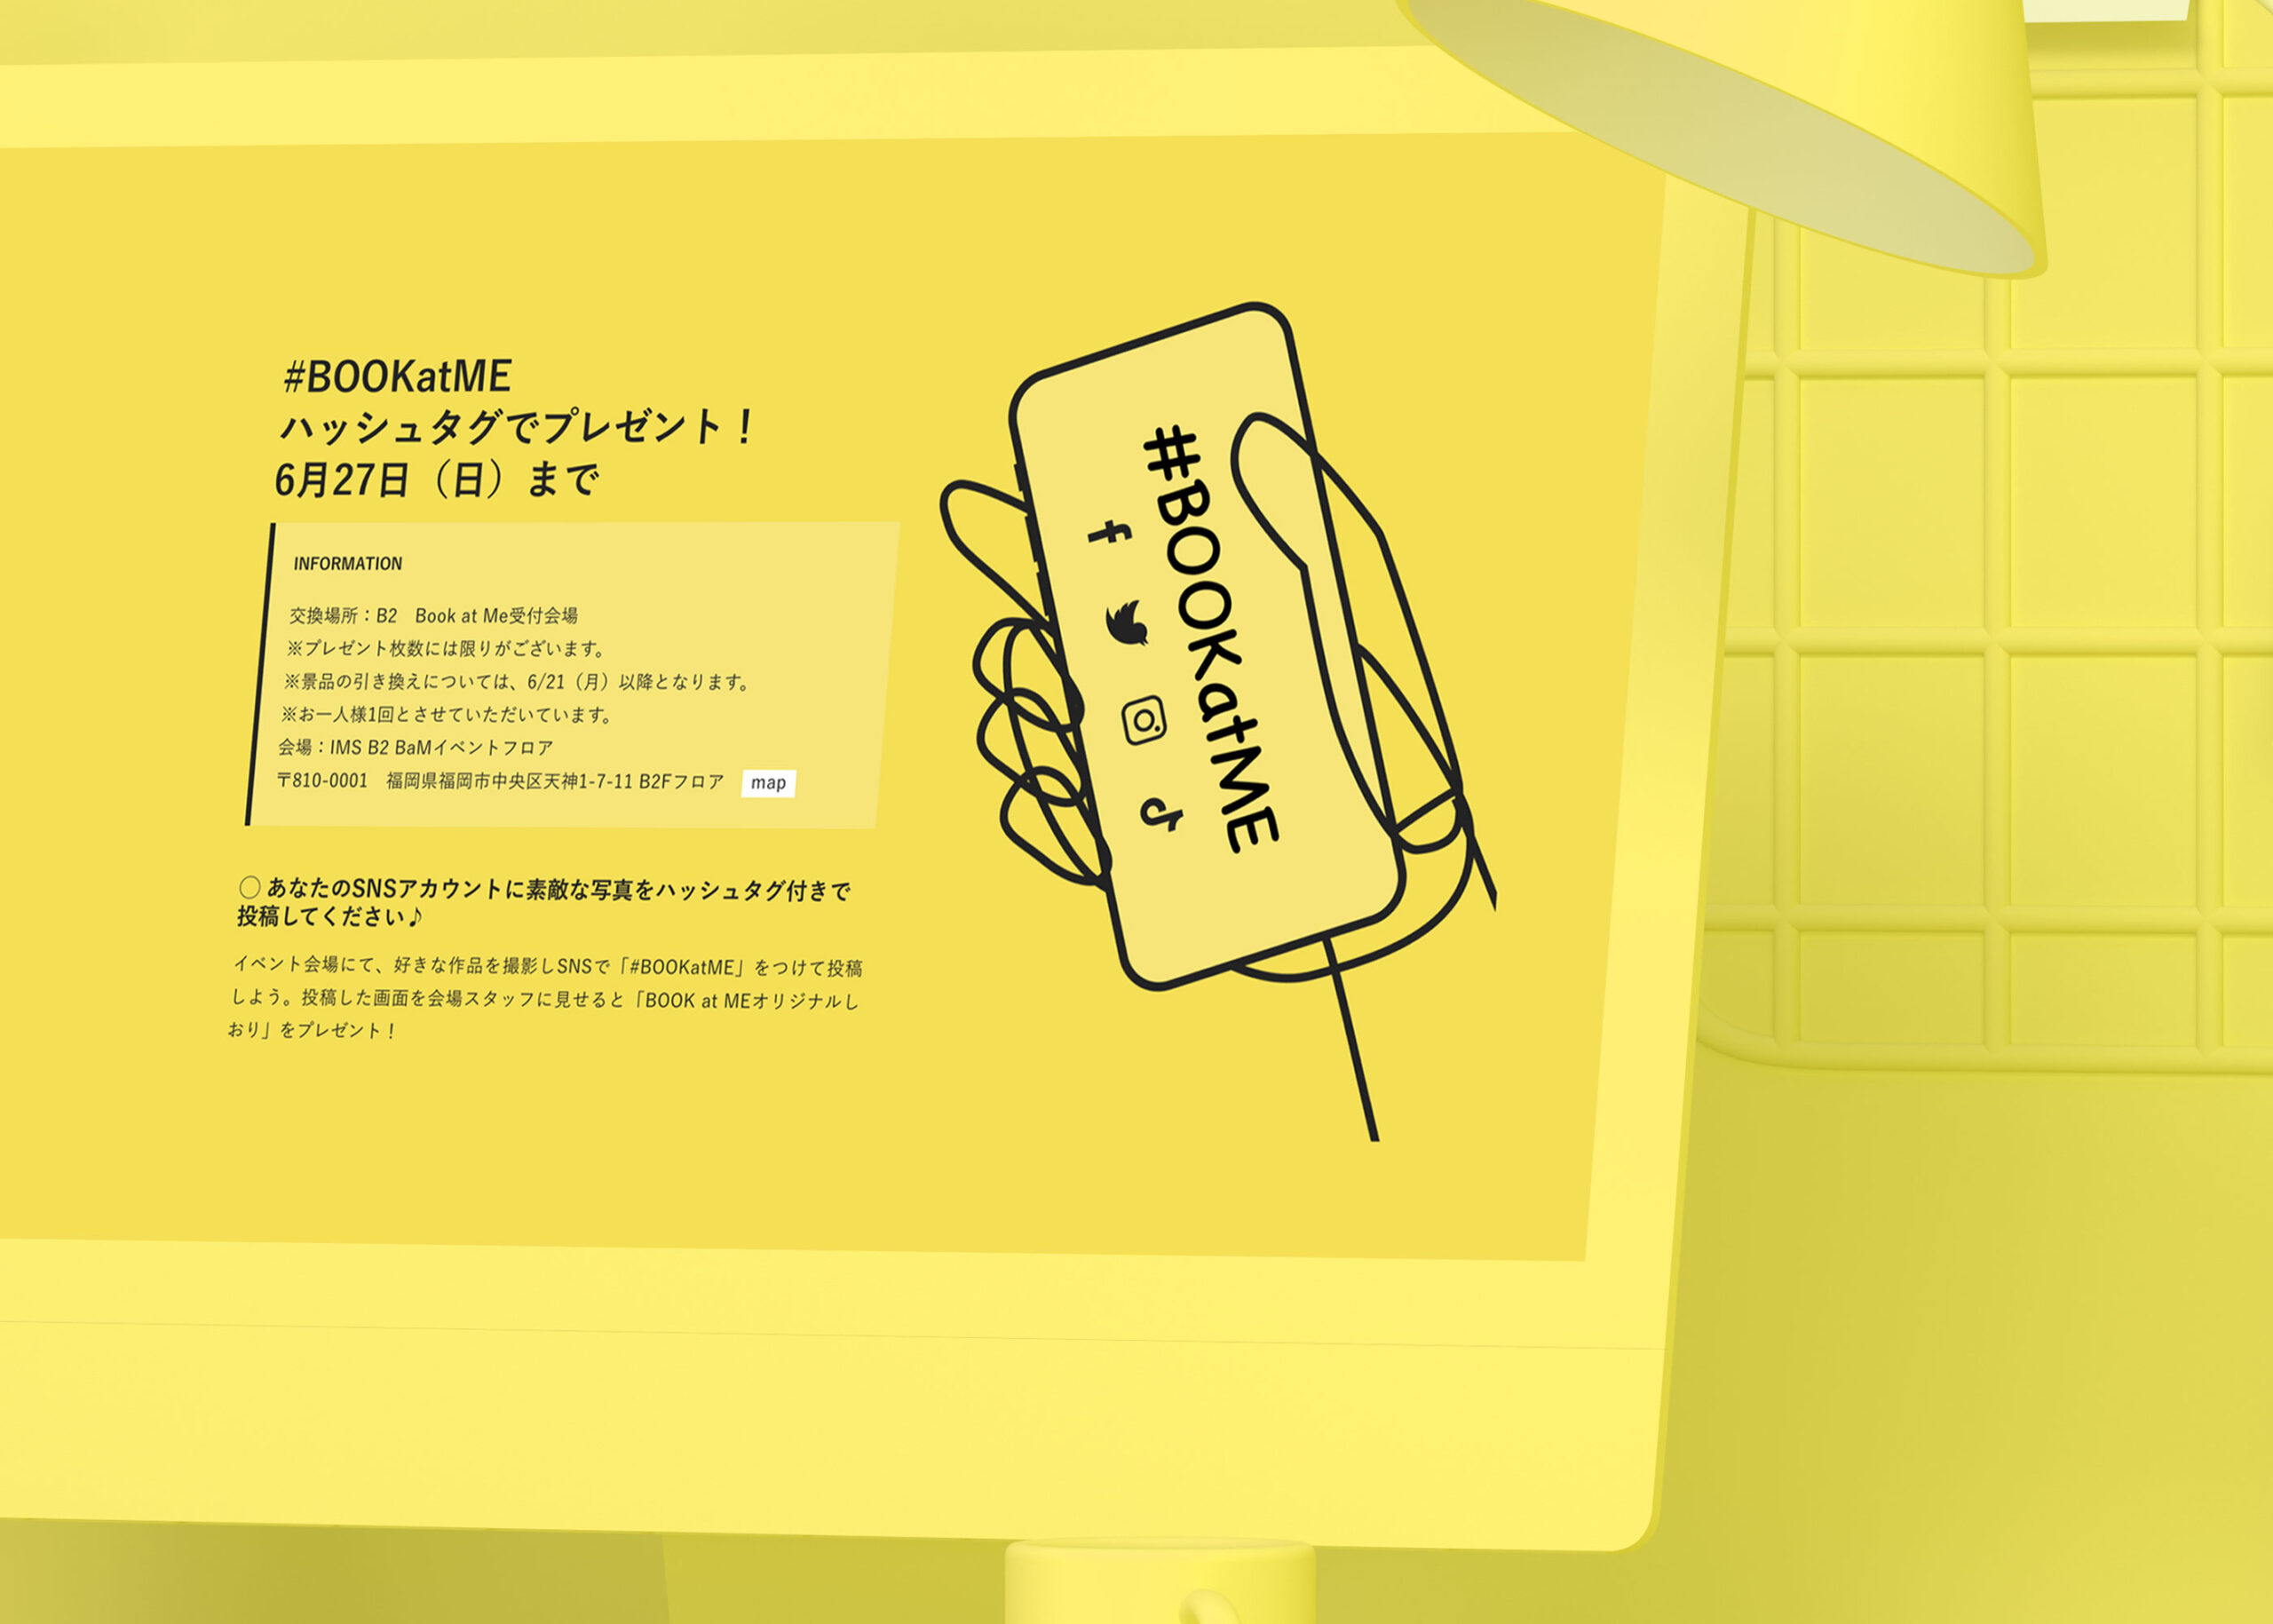 日本グラフィックデザイン協会JAGDA福岡主催Book at Meのインスタグラムハッシュタグキャンペーンページのウェブデザインがデスクトップパソコンに映っているグラフィックス